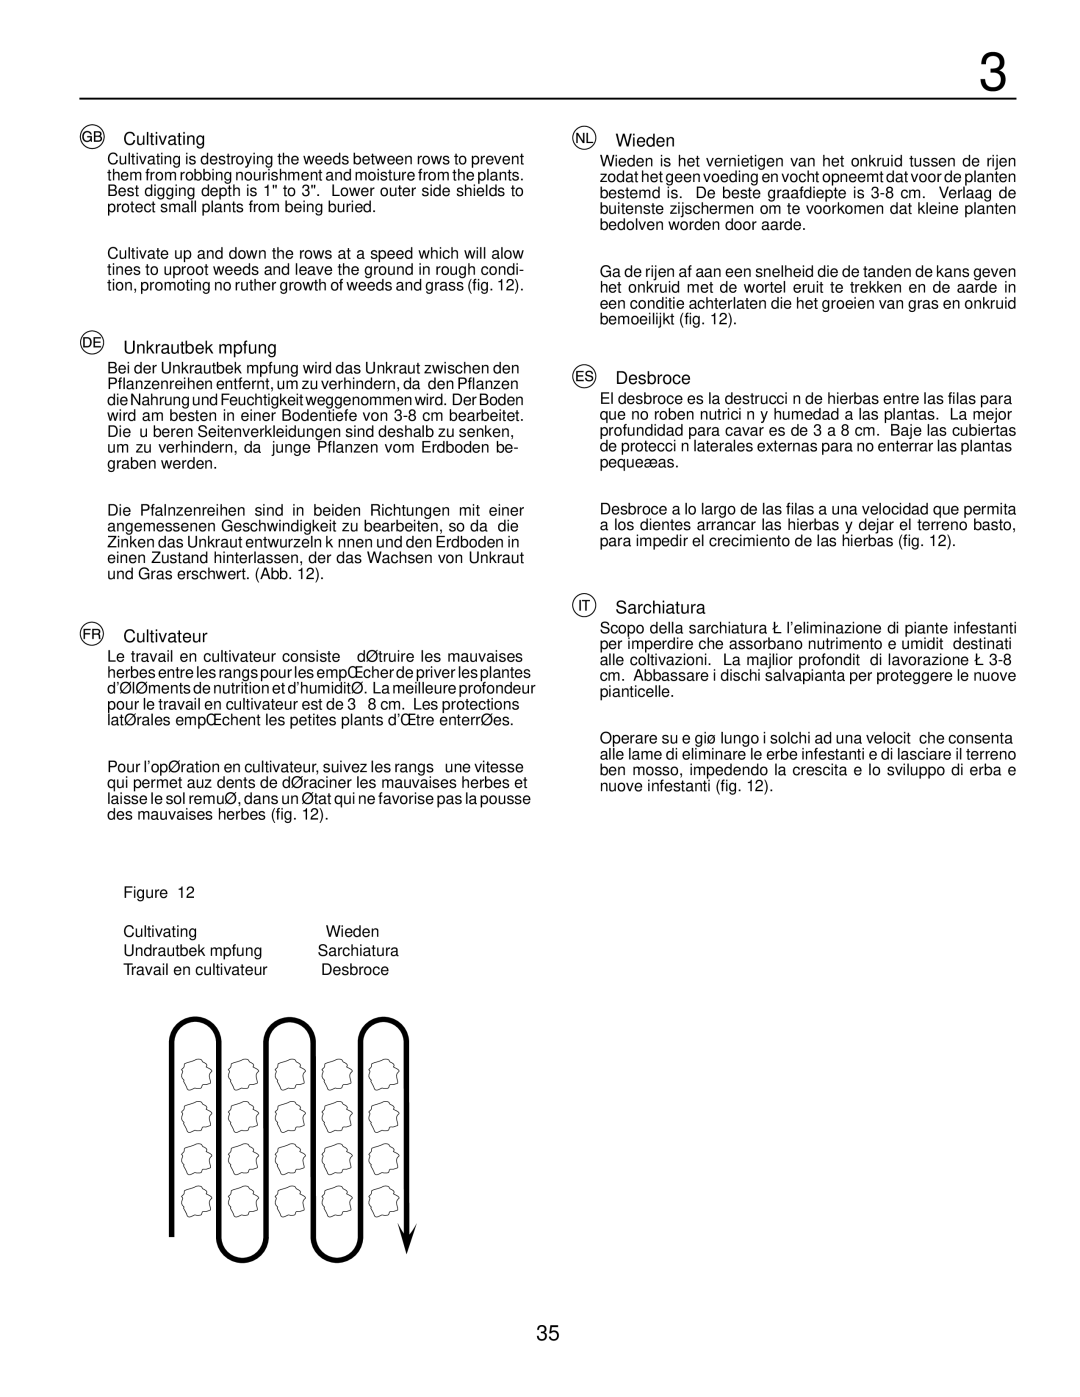 McCulloch MRT6 instruction manual Cultivating, Unkrautbekämpfung, Cultivateur, Wieden, Desbroce, Sarchiatura 